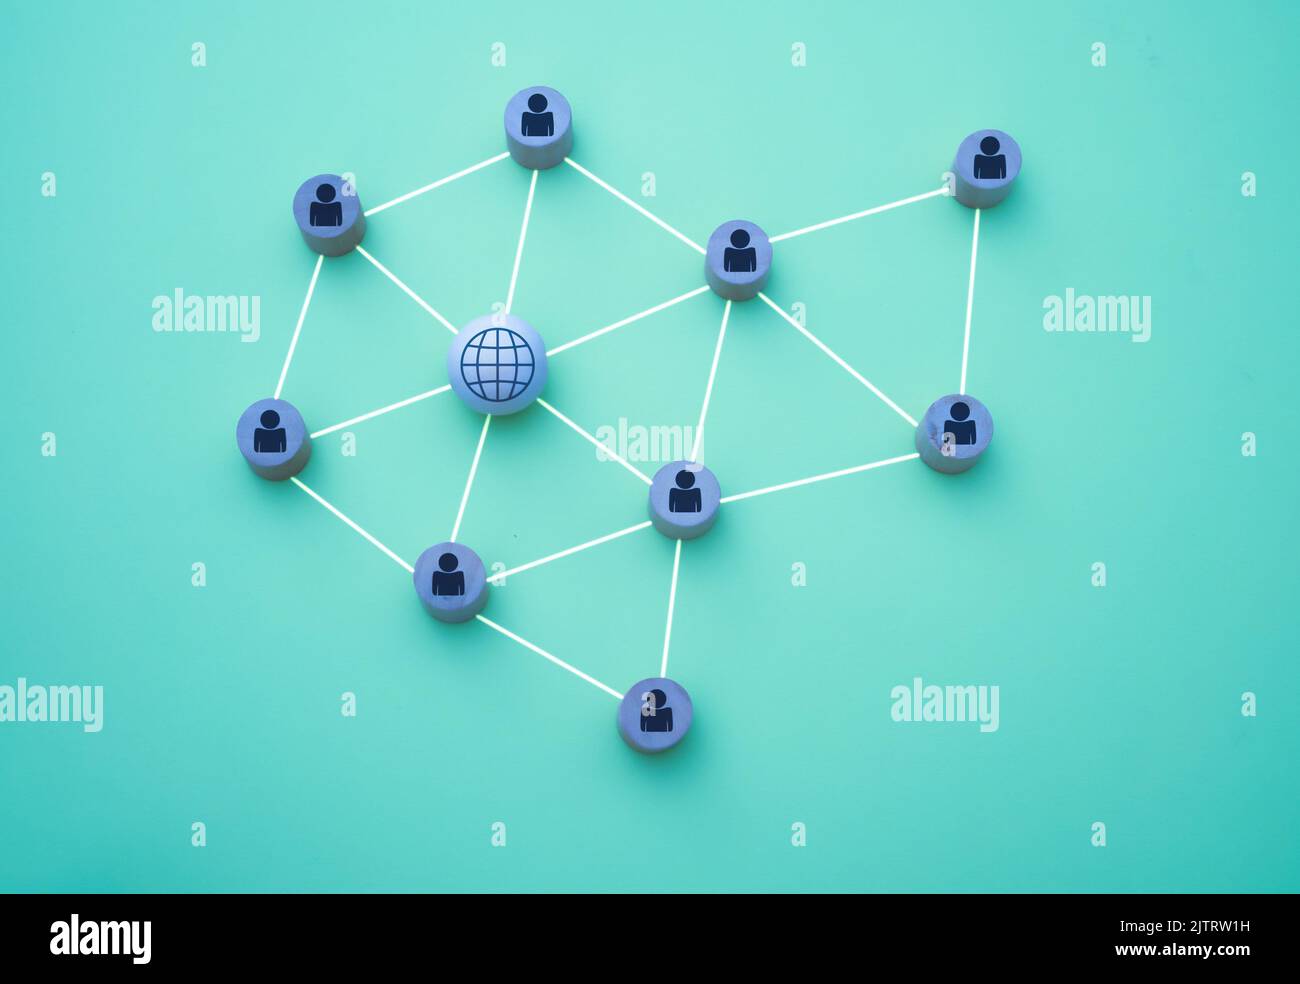 3D Darstellung von Menschen, die mit dem Netzwerk in Form eines Netzes verbunden sind, dargestellt mit Holzstücken auf blauem Hintergrund Stockfoto